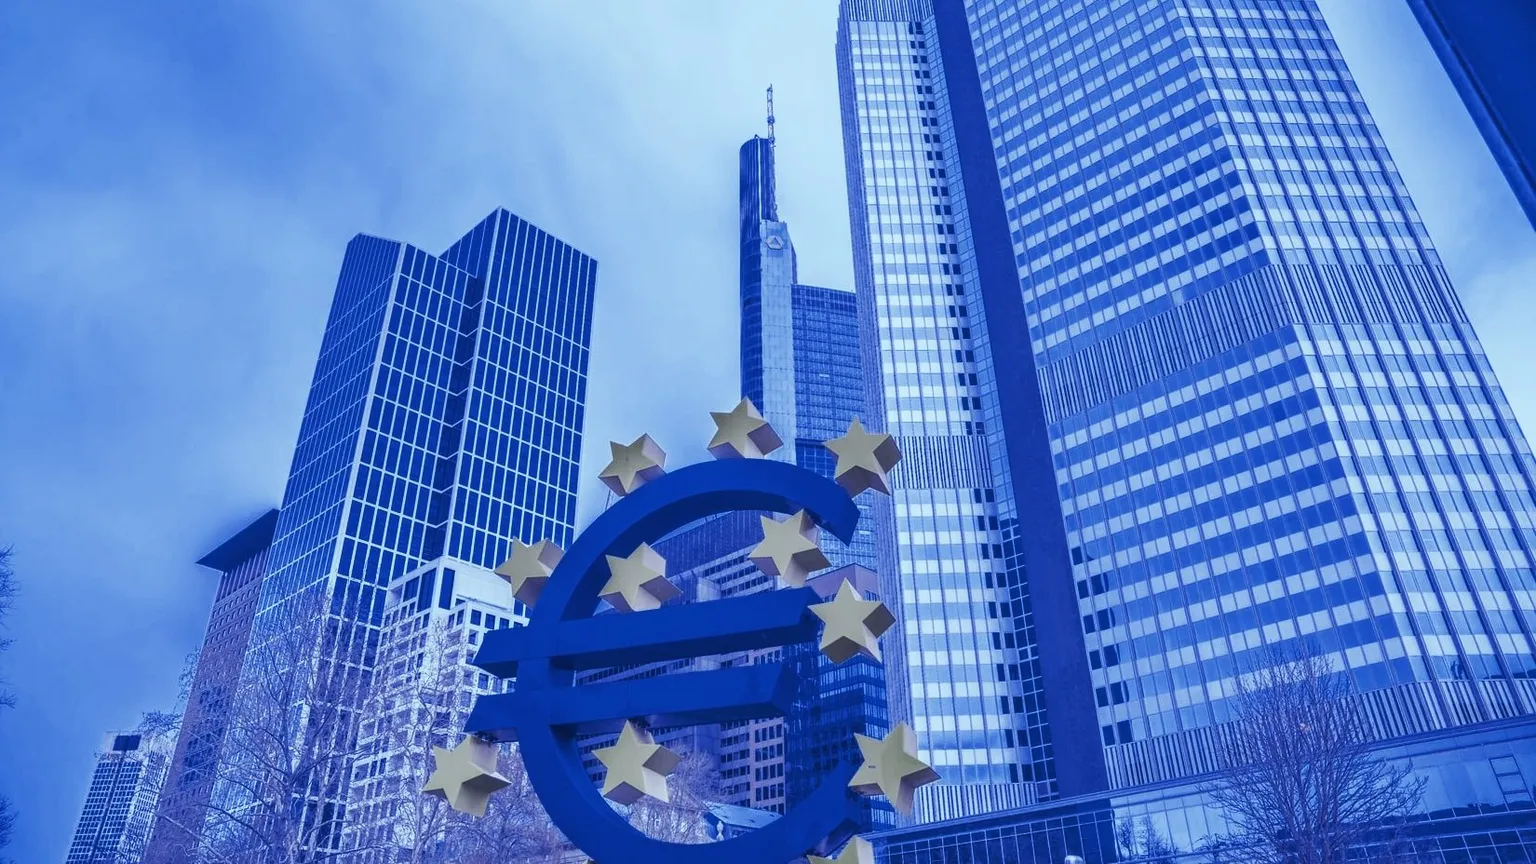 The European Central Bank is based in Frankfurt. Image: Unsplash